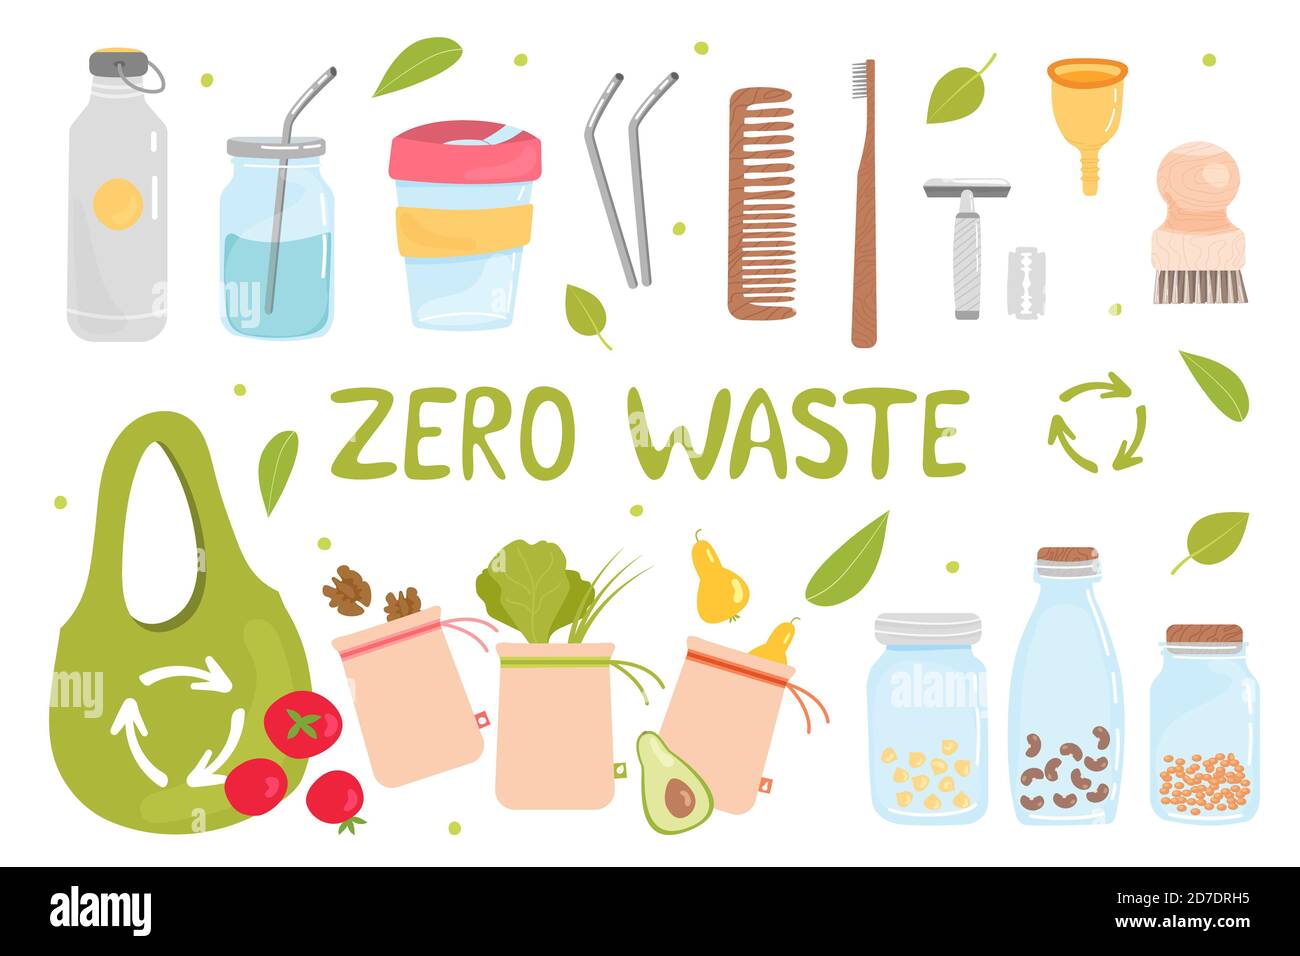 Ideas Zero Waste para reutilizar los tarros de cristal